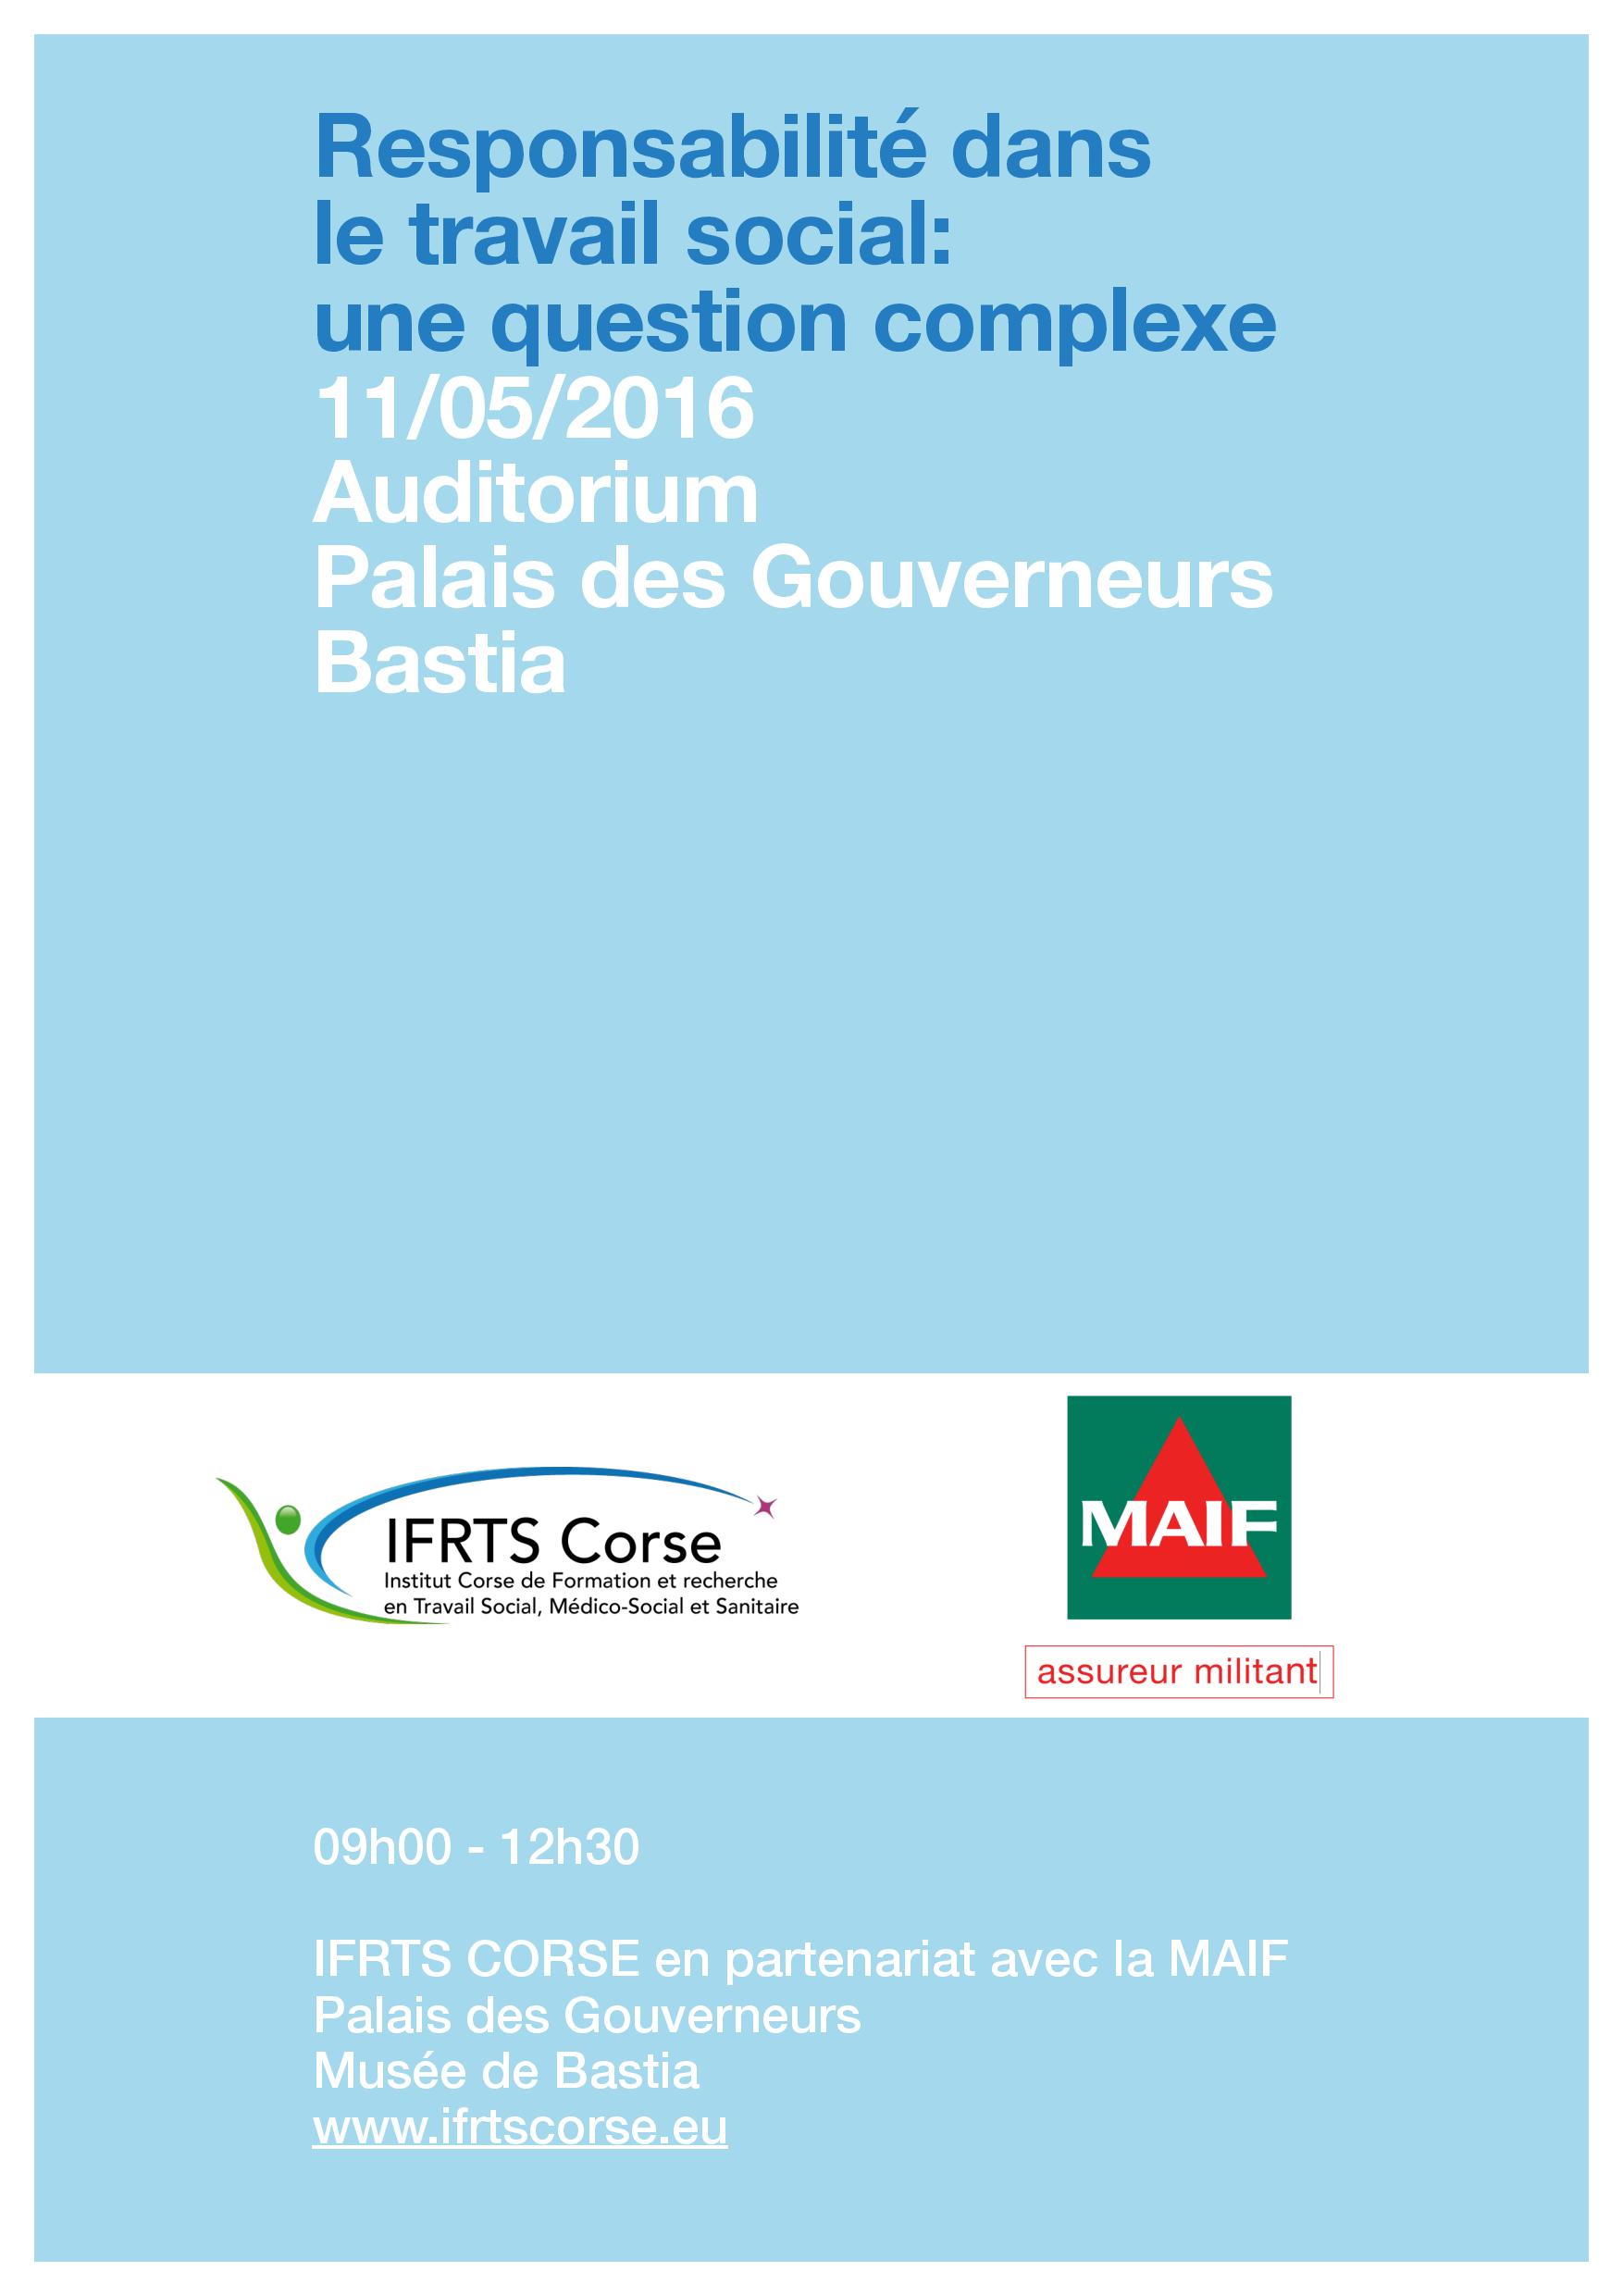 Bastia : Une conférence sur le travail social